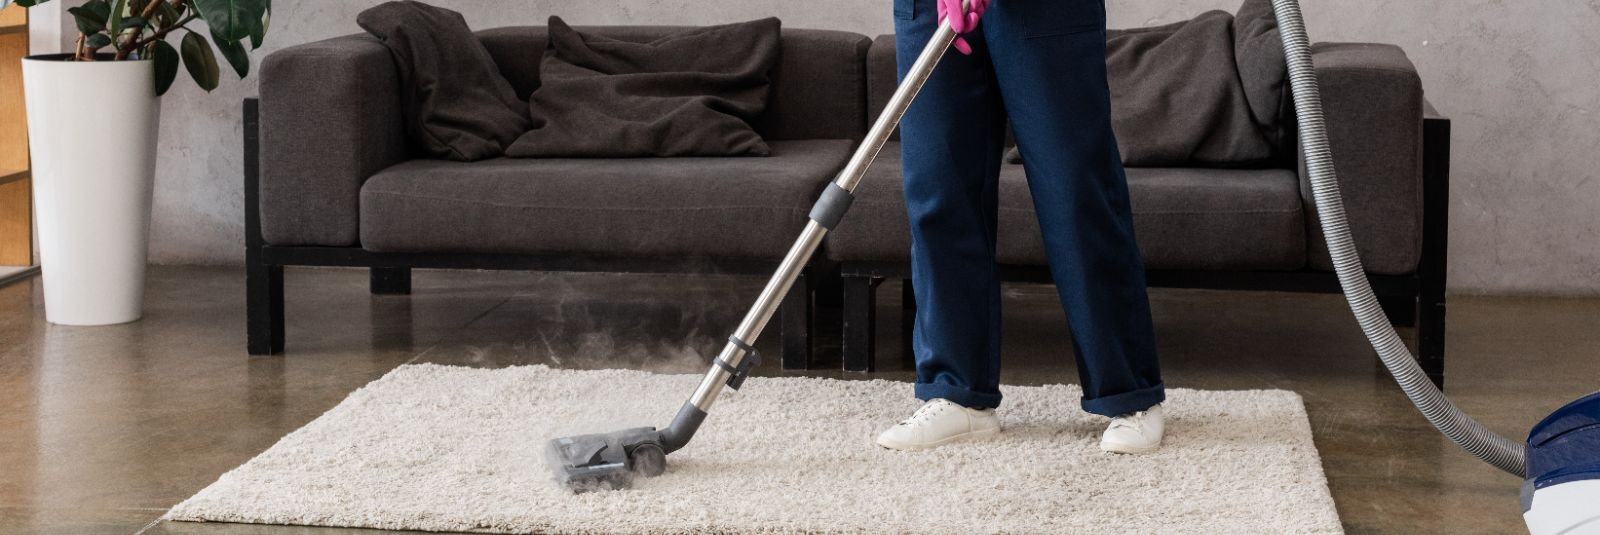 Kas olete kunagi tundnud, et teie kodus või kontoris on raske saavutada tõeliselt puhtaid ruume? Tavaline koristamine võib aidata hoida pindu ja põrandaid suhte